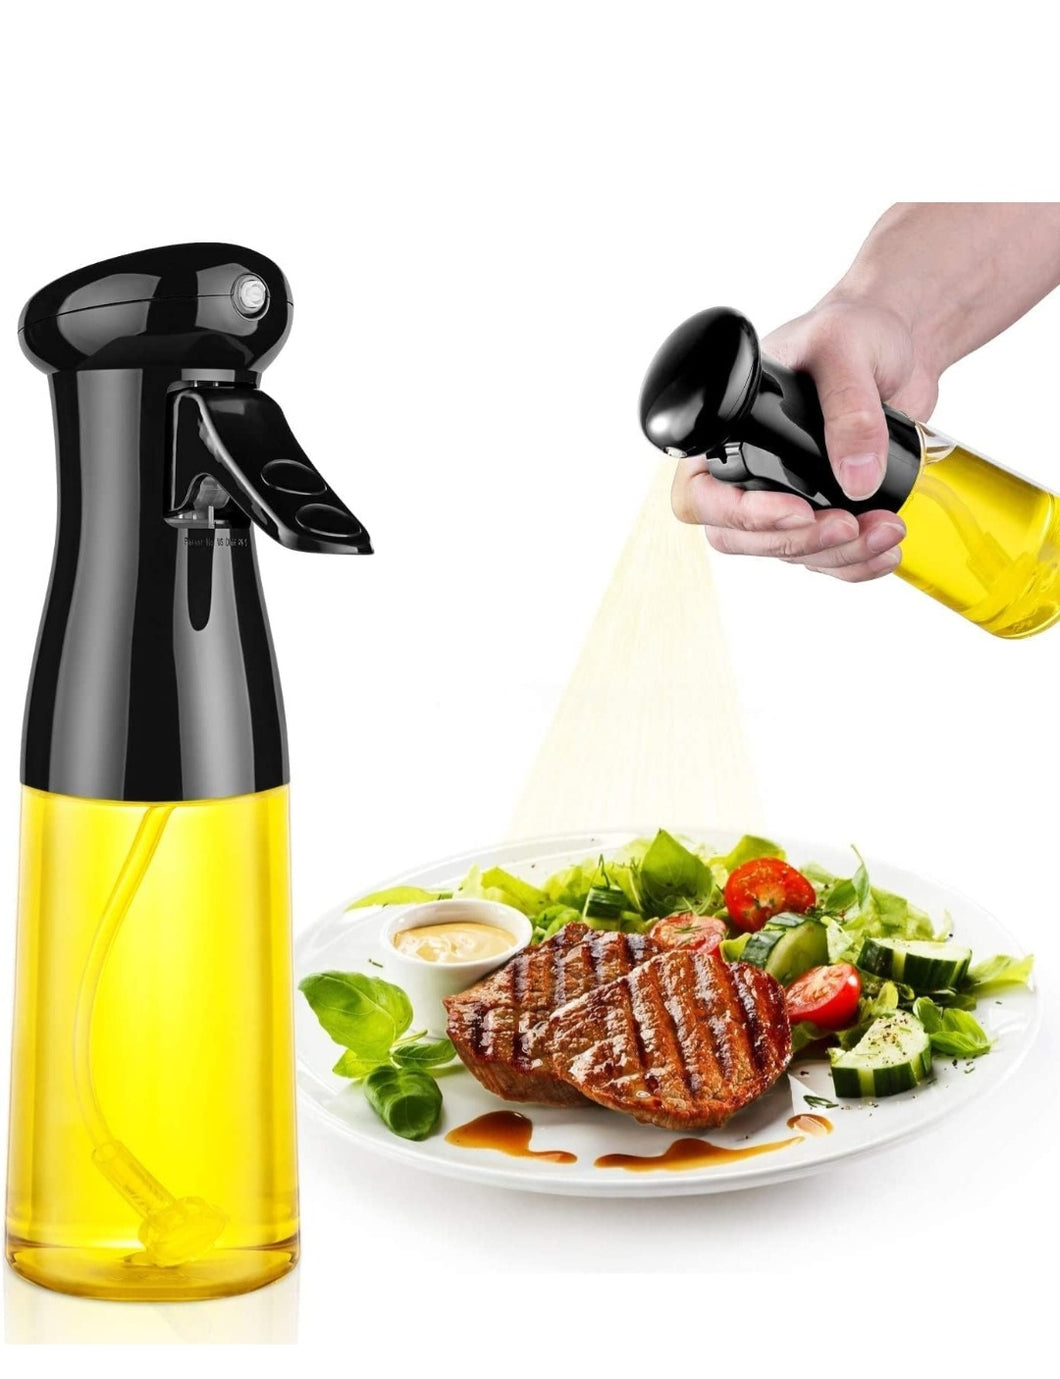 Oil Sprayer for Cooking, 210ml Glass Oil Dispenser Bottle Spray Mister, Refillable Food Grade Oil Vinegar Spritzer Sprayer Bottles for Kitchen.